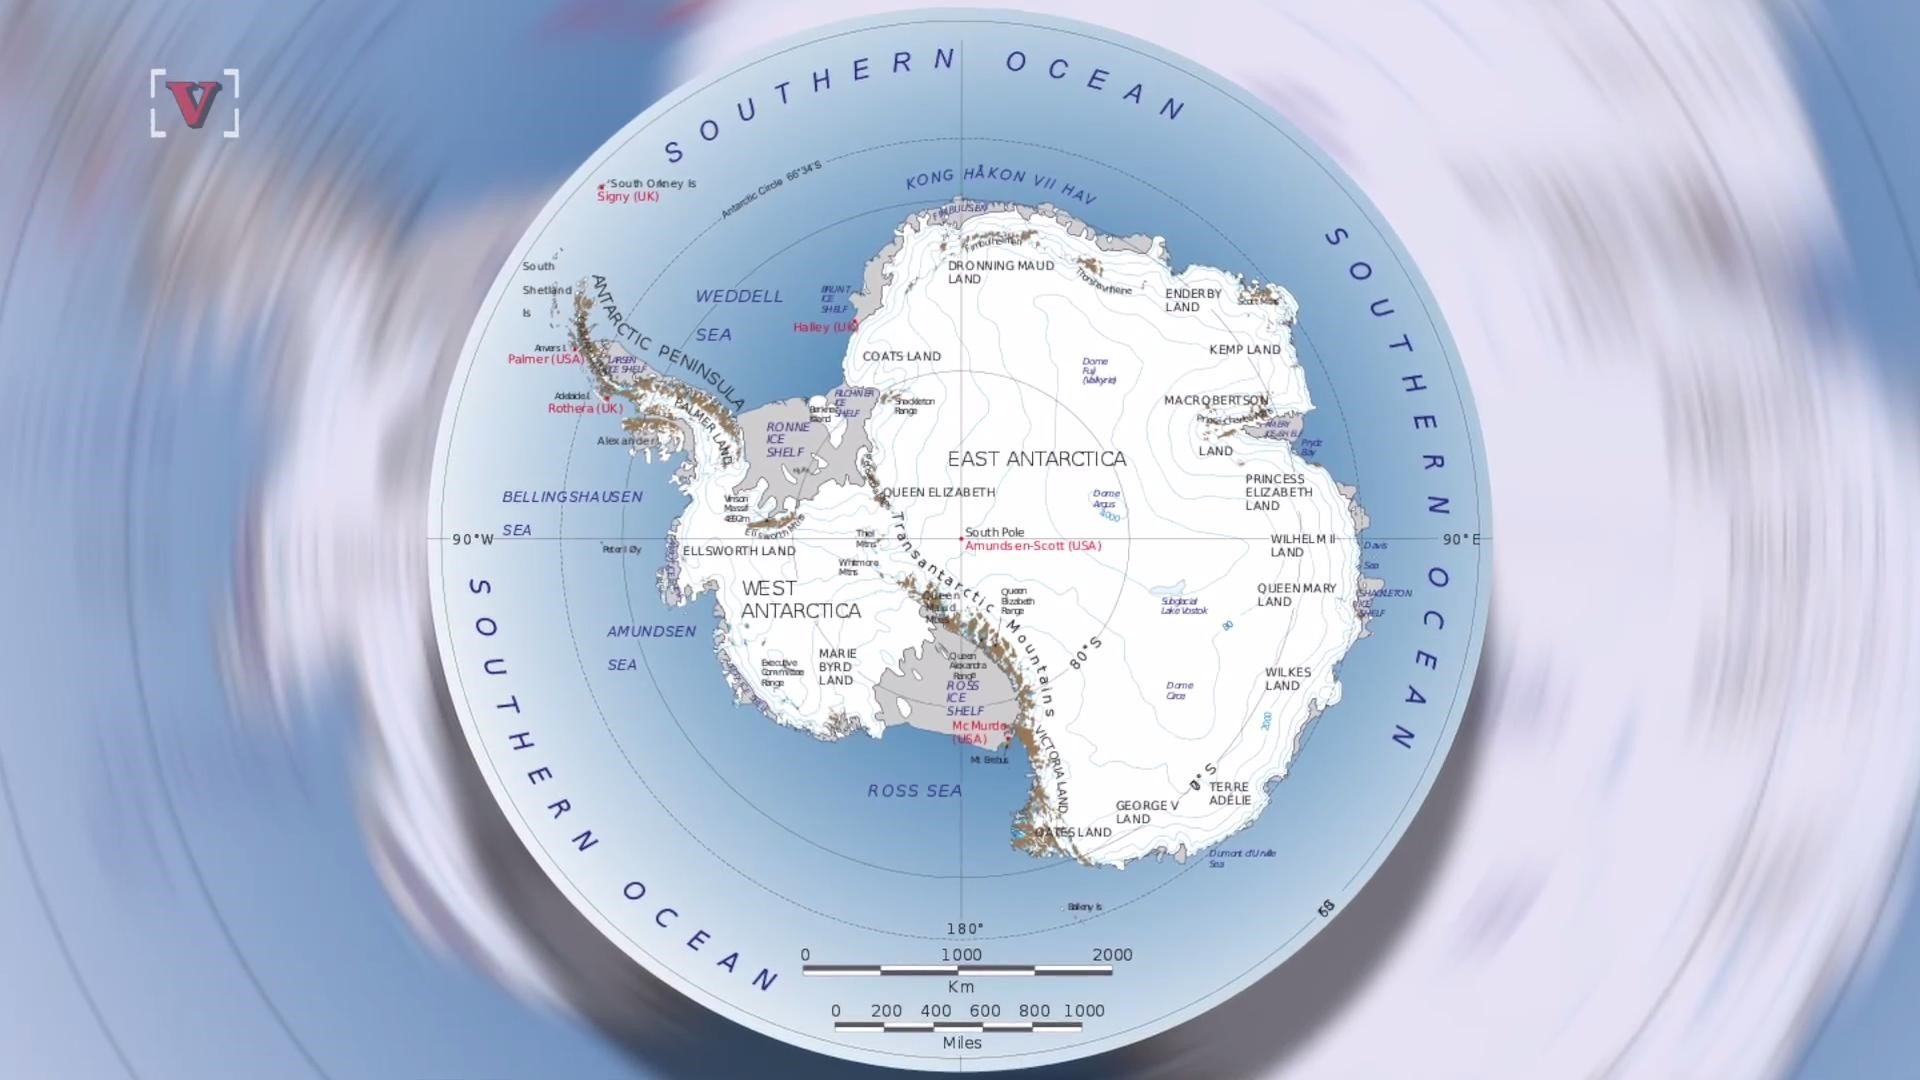 Океаны которые омывают антарктиду. Земля Уилкса на карте Антарктиды. Антарктида на карте. Шельфовый ледник Беллинсгаузена.